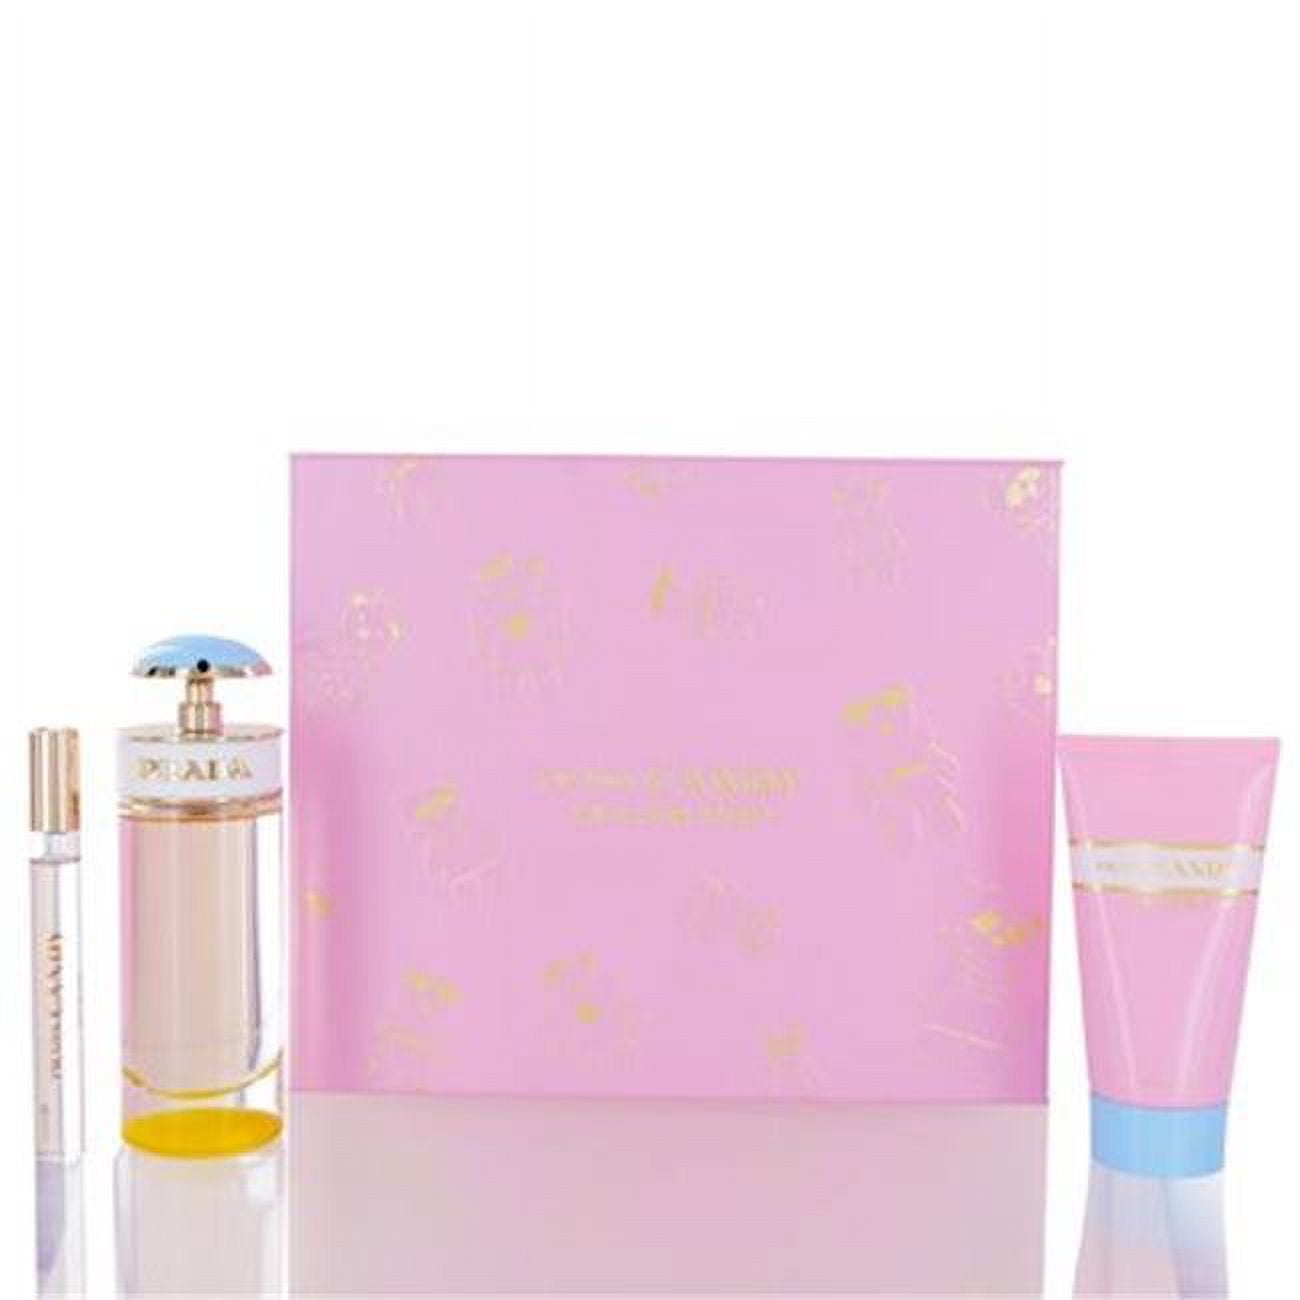 Prada Candy Eau de Parfum 3-Piece Gift Set